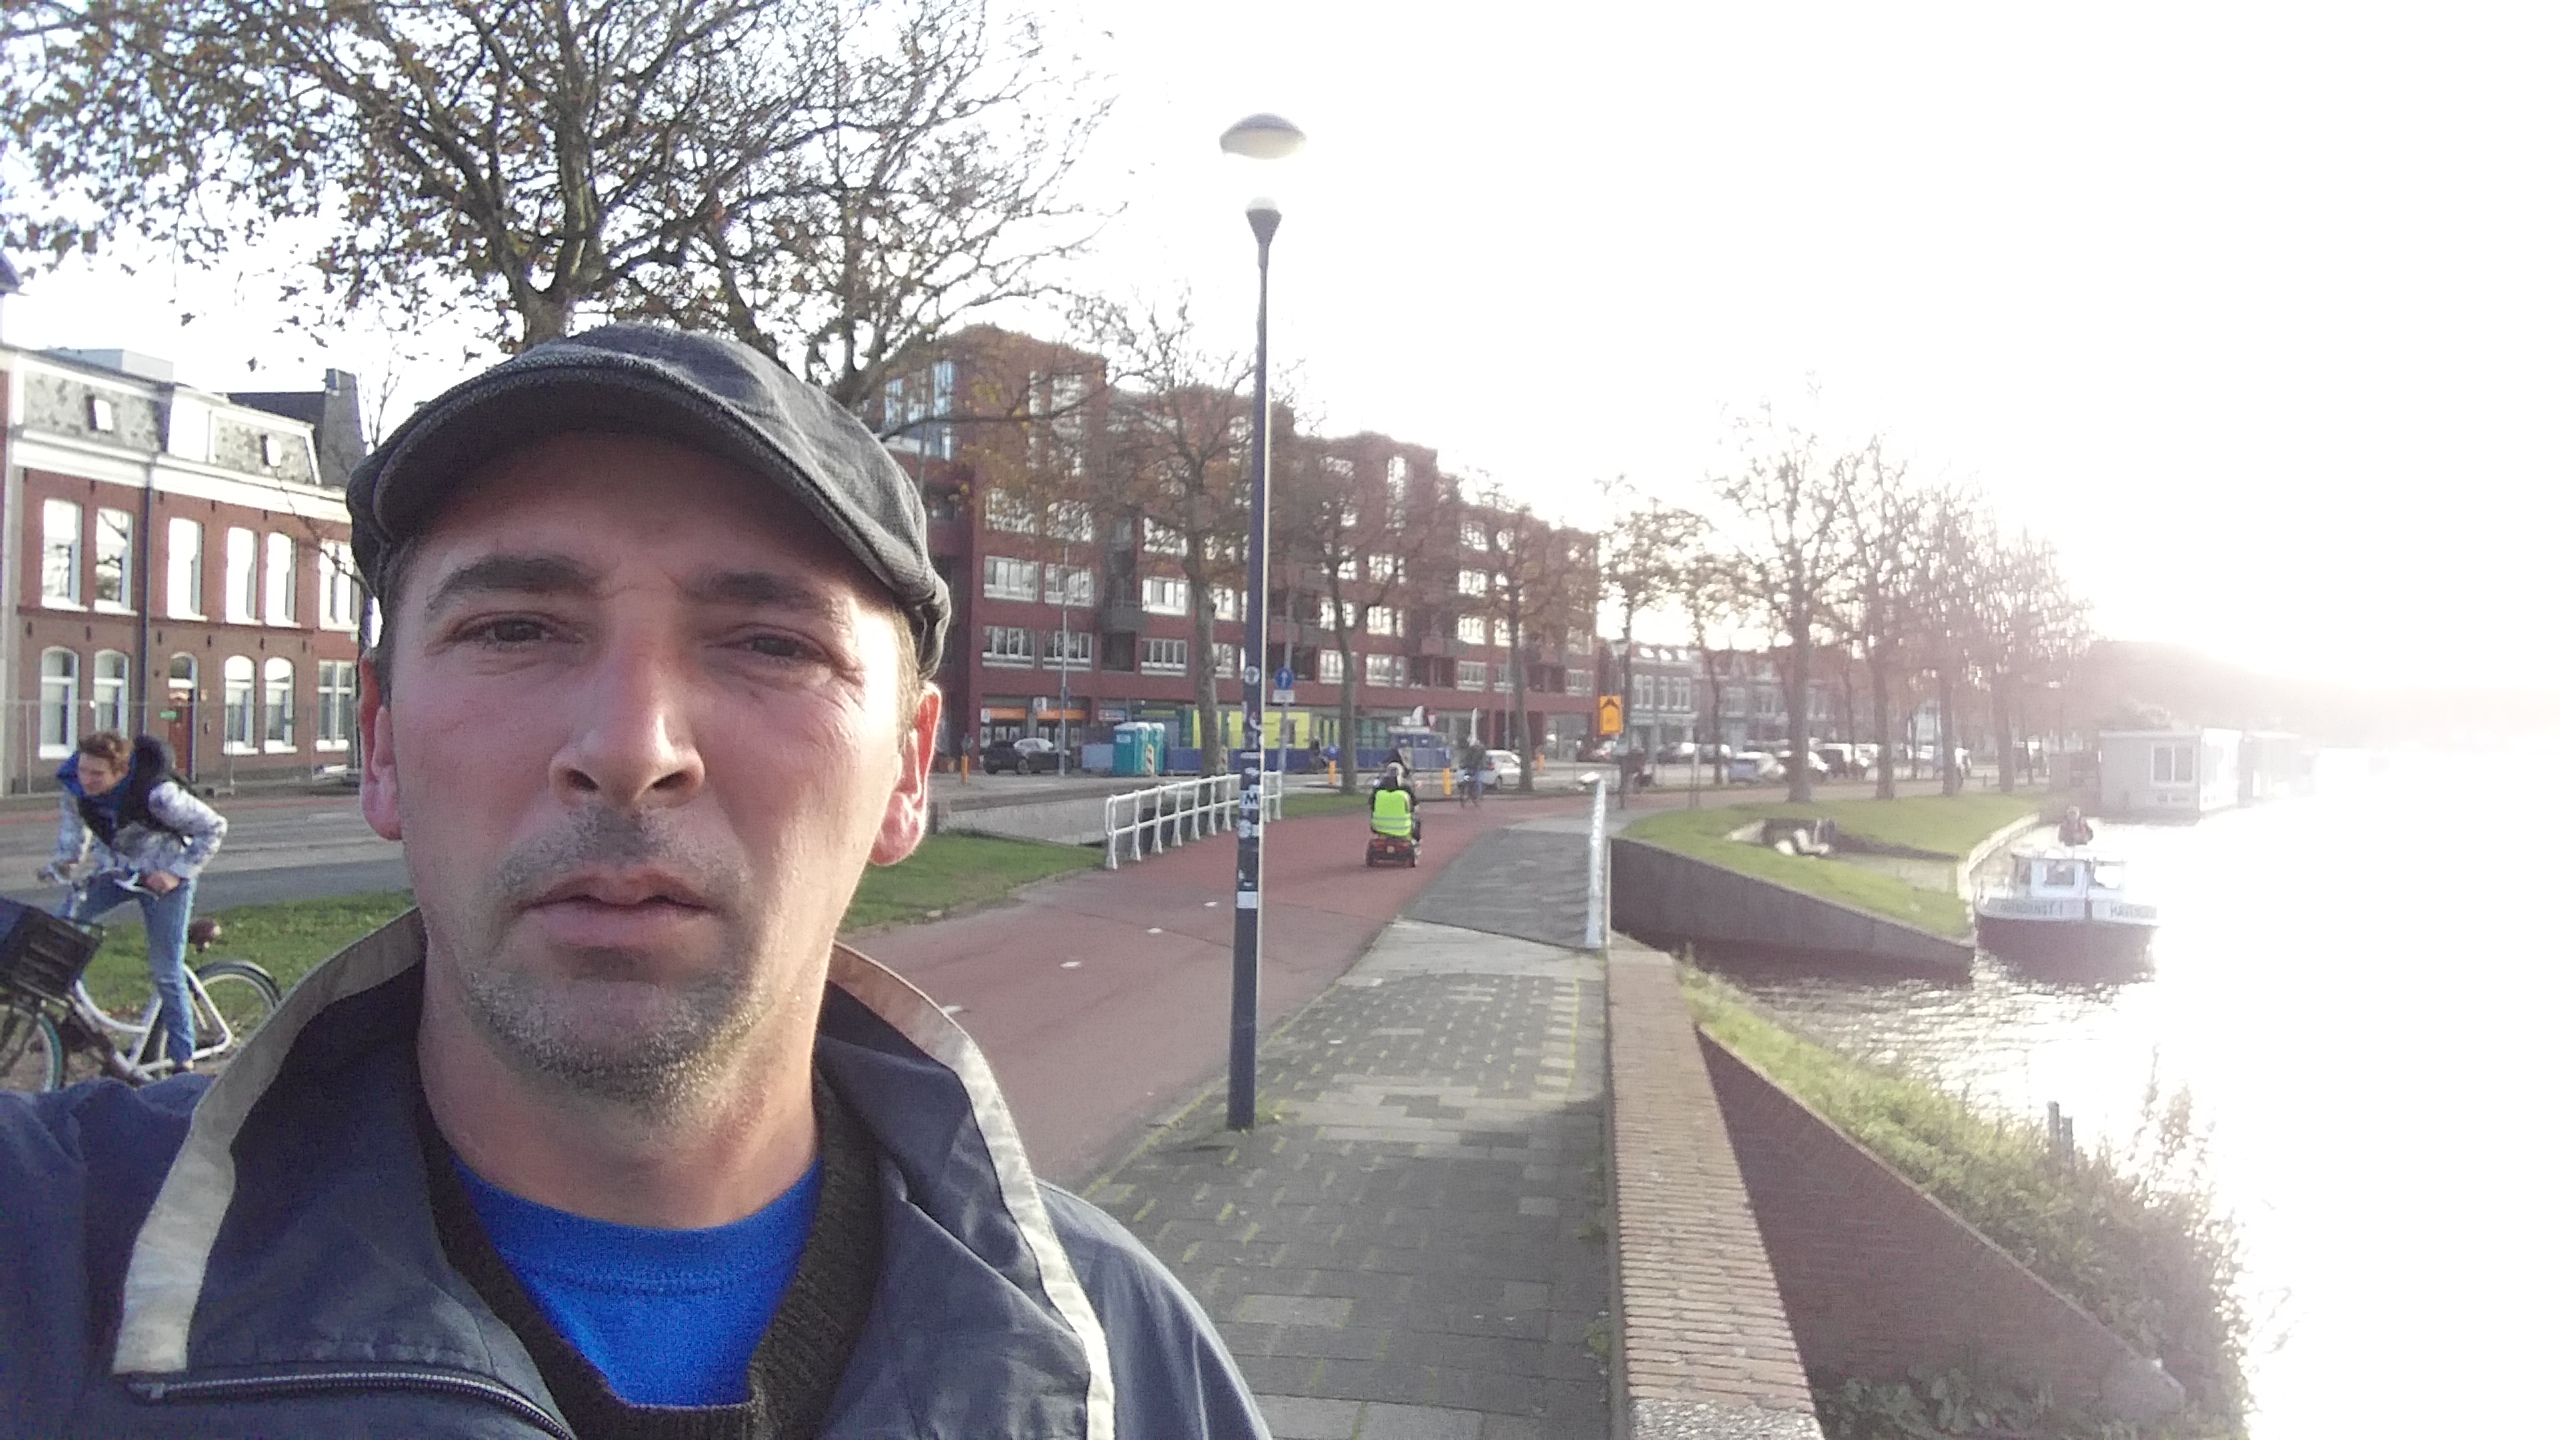 Haarlem (Centrum Region) NL - I